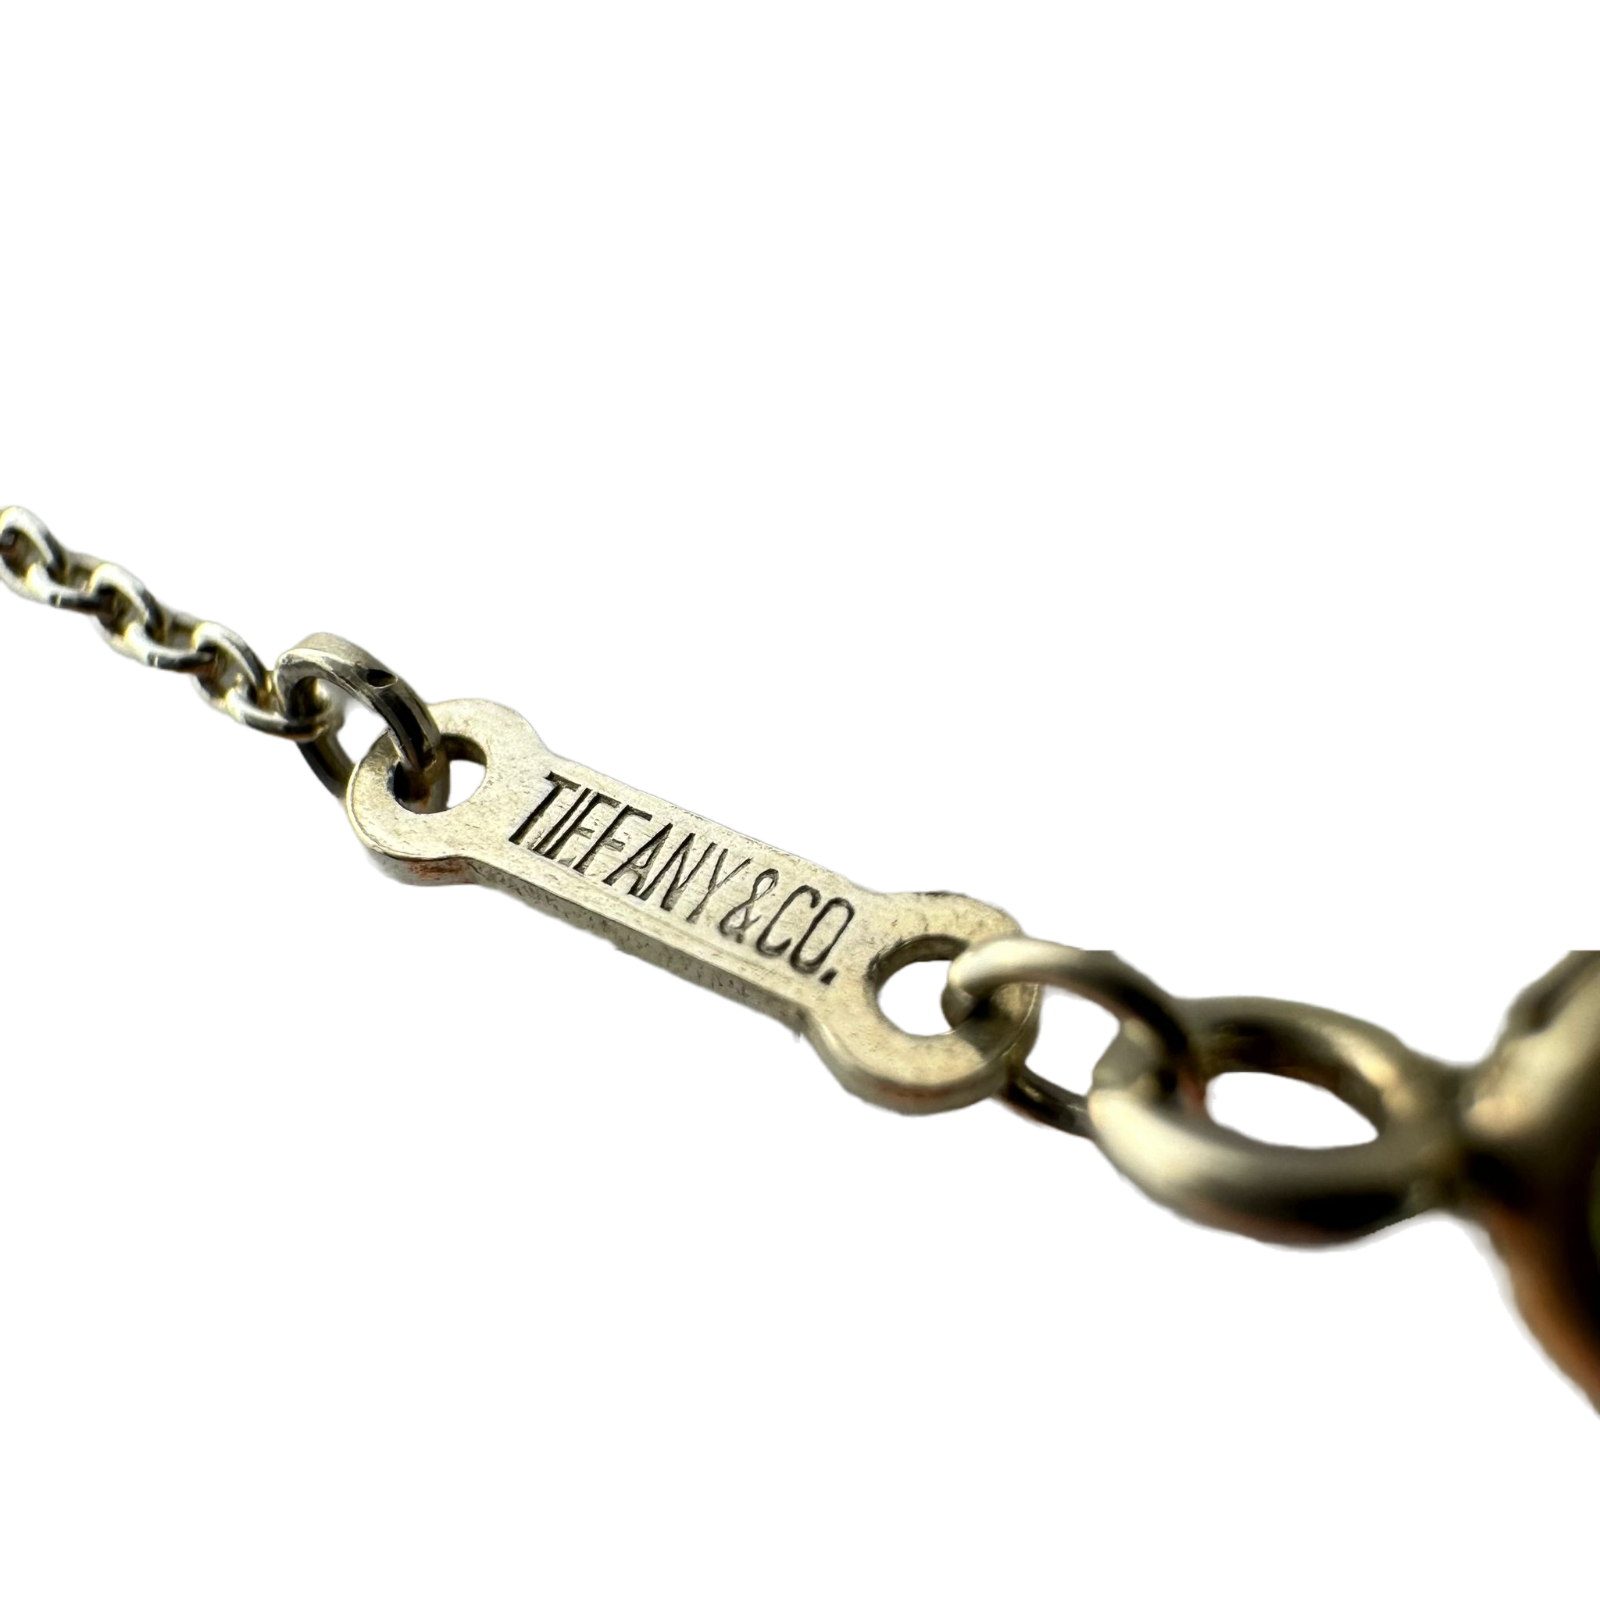 Tiffany & Co Open Teardrop Pendant Necklace Sterling Silver